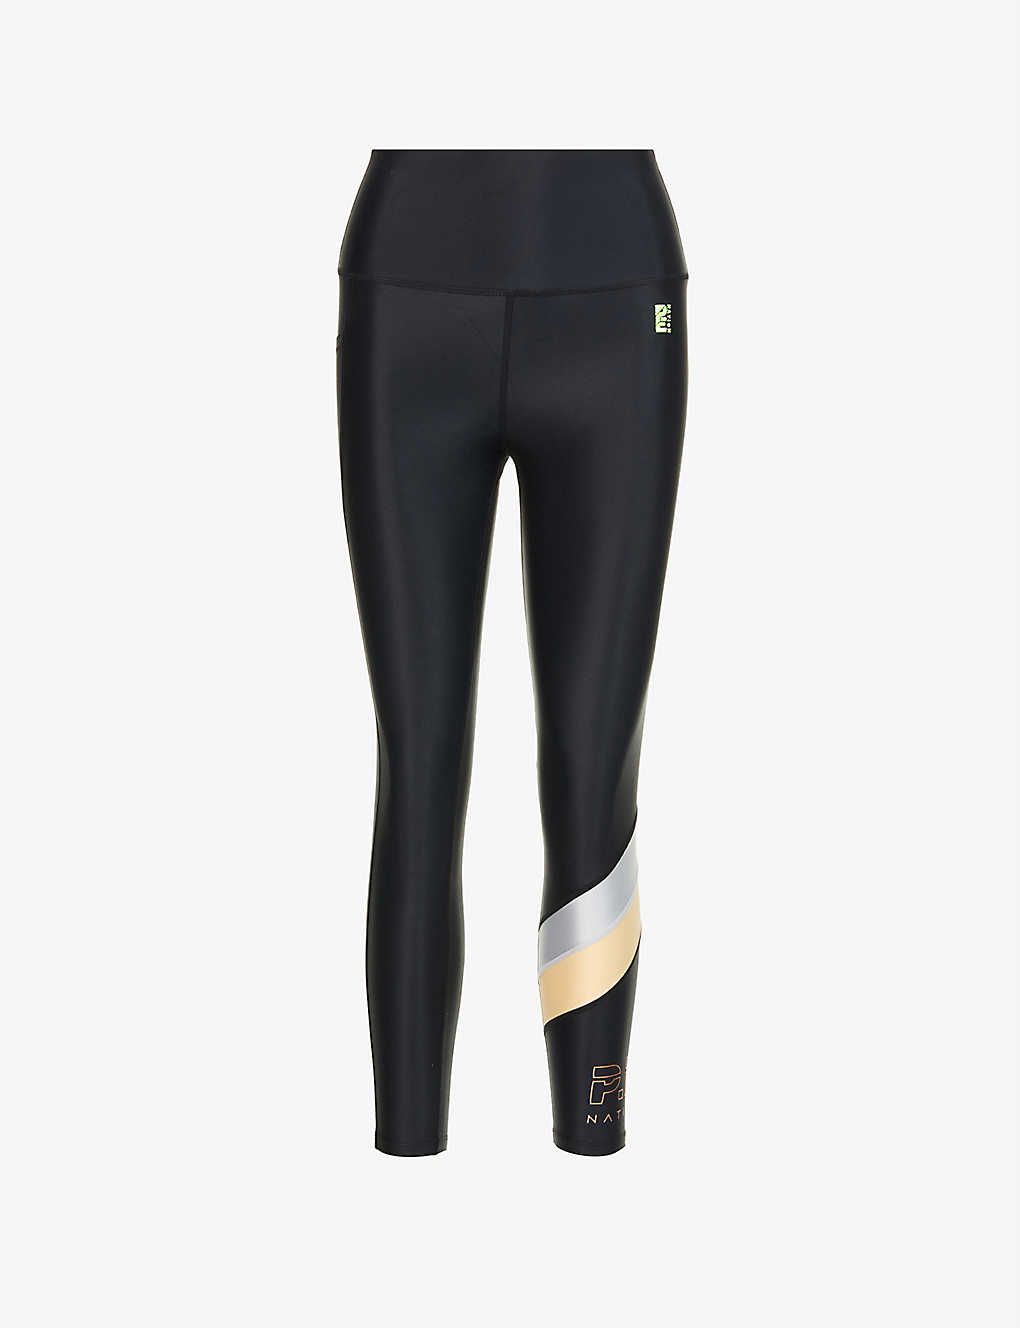 Alignment brand-print recycled nylon-blend leggings Selfridges & Co Women Sport & Swimwear Sportswear Sports Leggings 